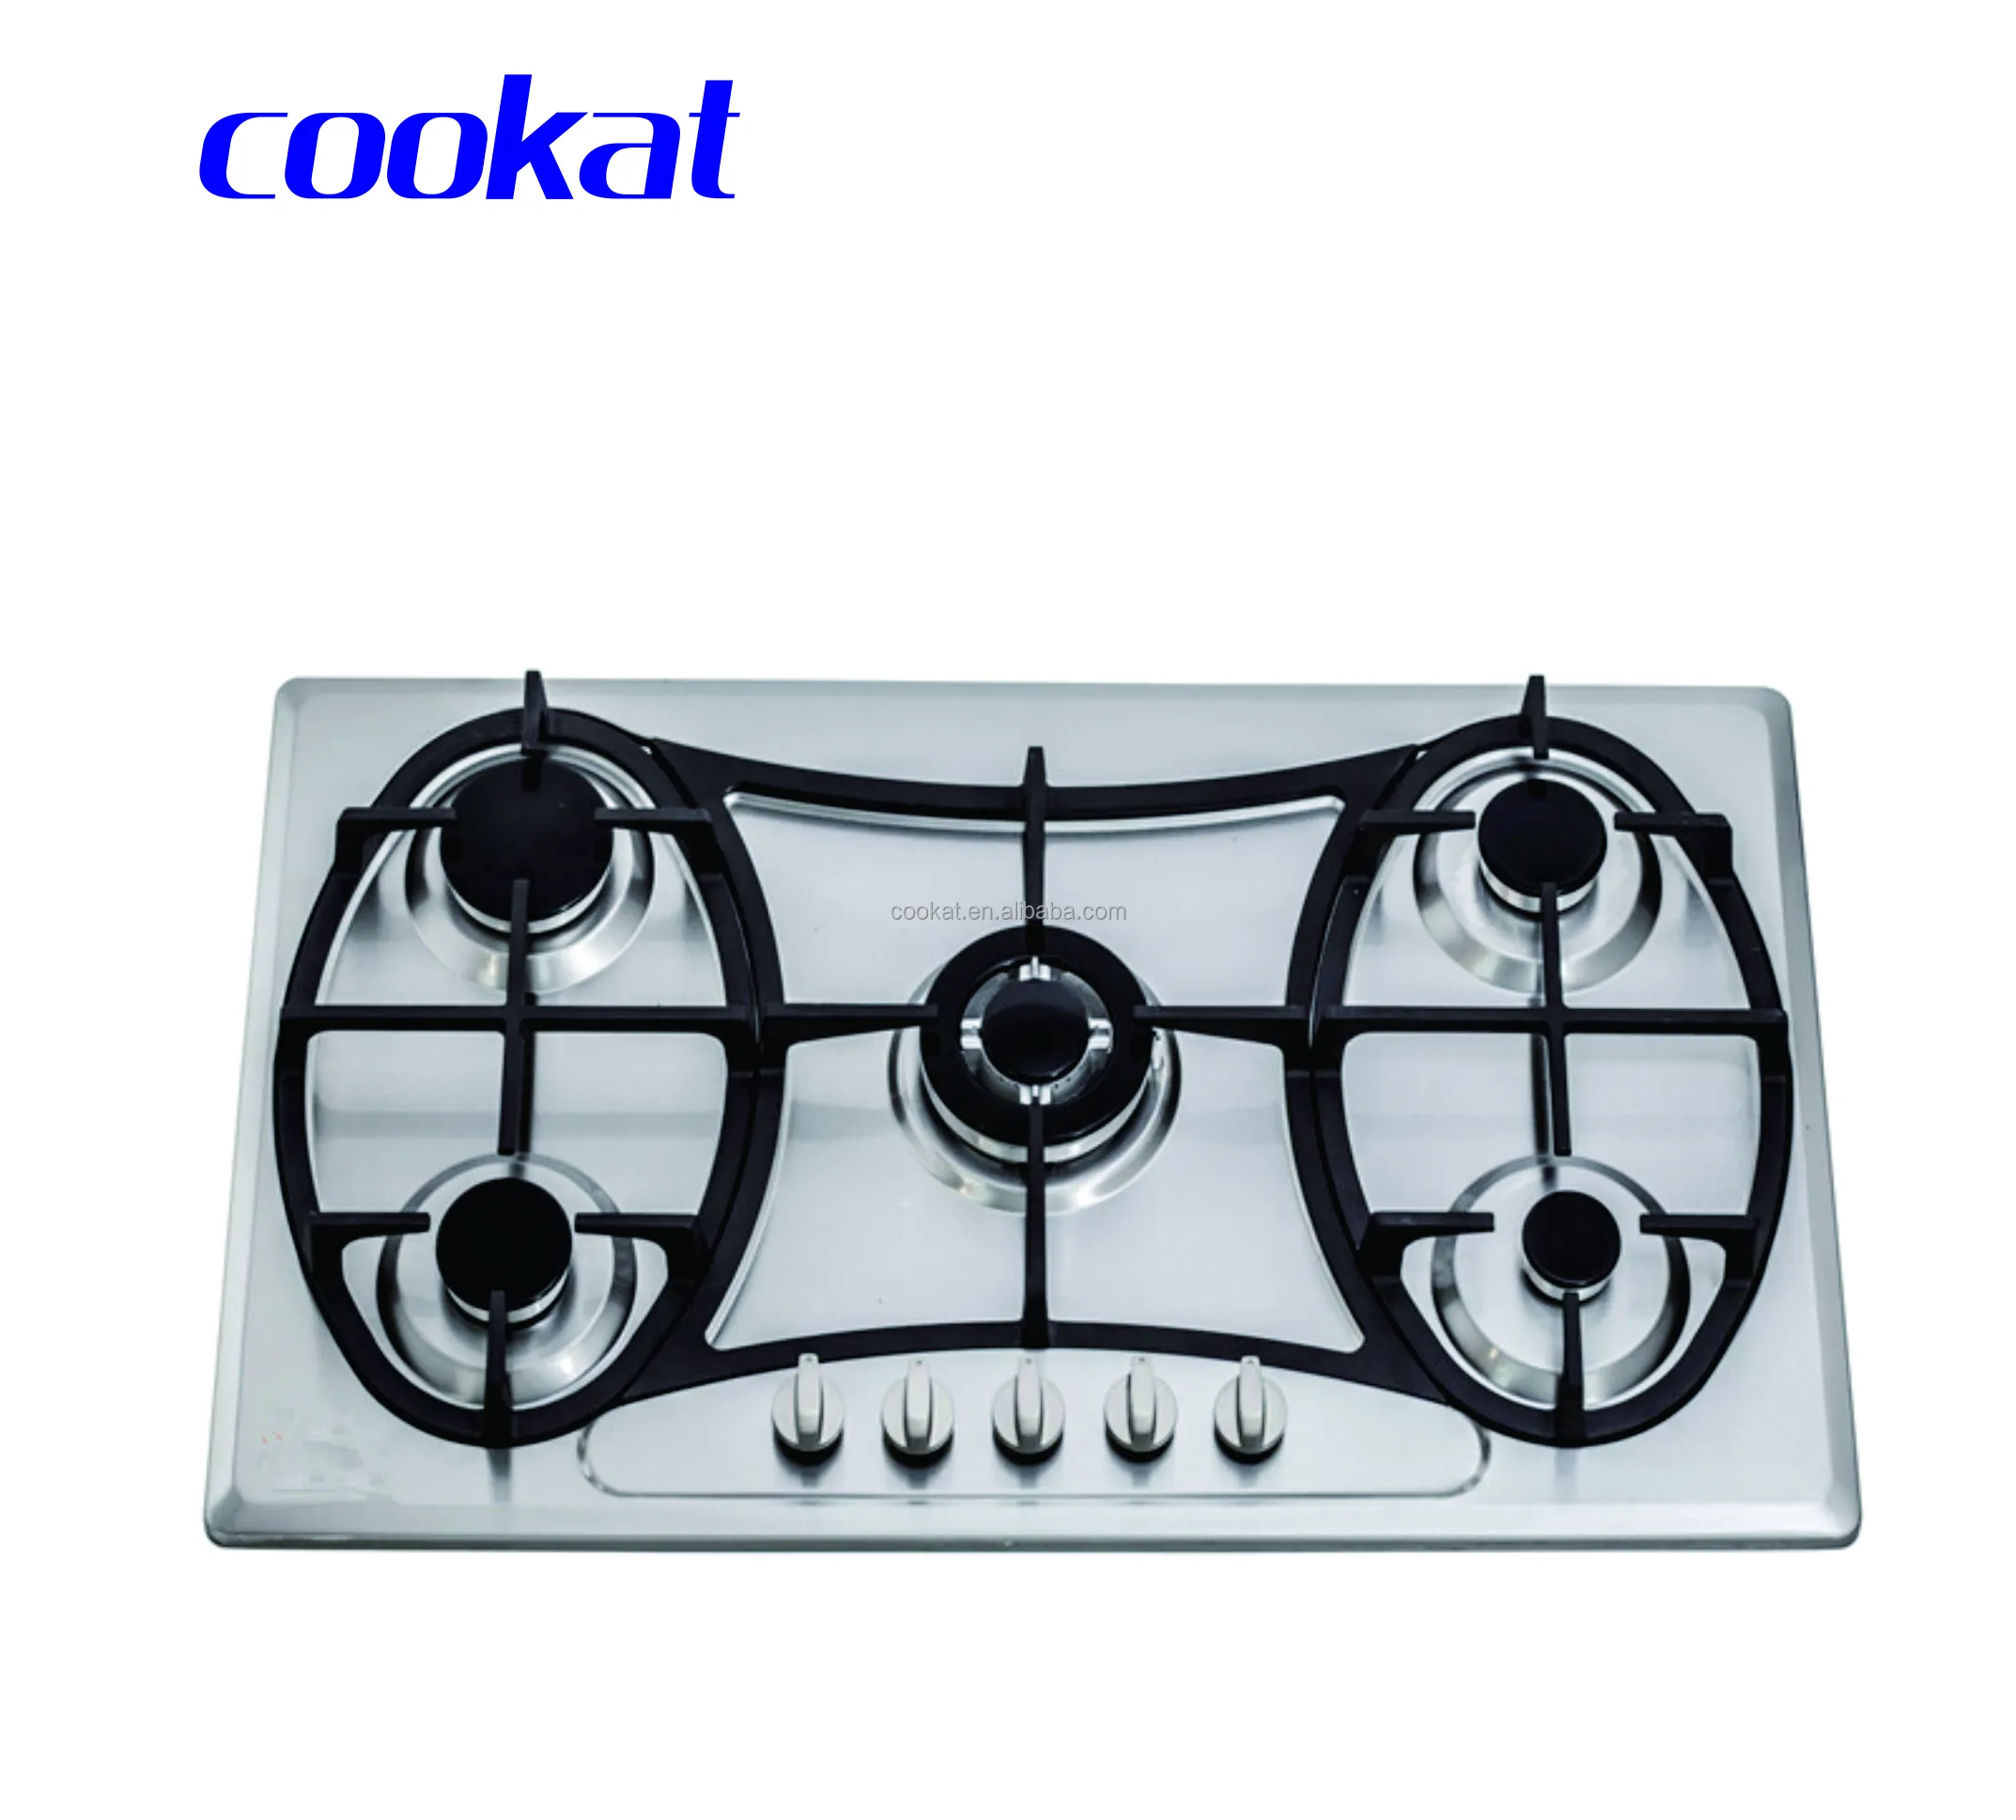 Electrodomésticos China Estufa de cocina Hogar Propano Gaz Quemador 5 Ojos Cook Top Cooker